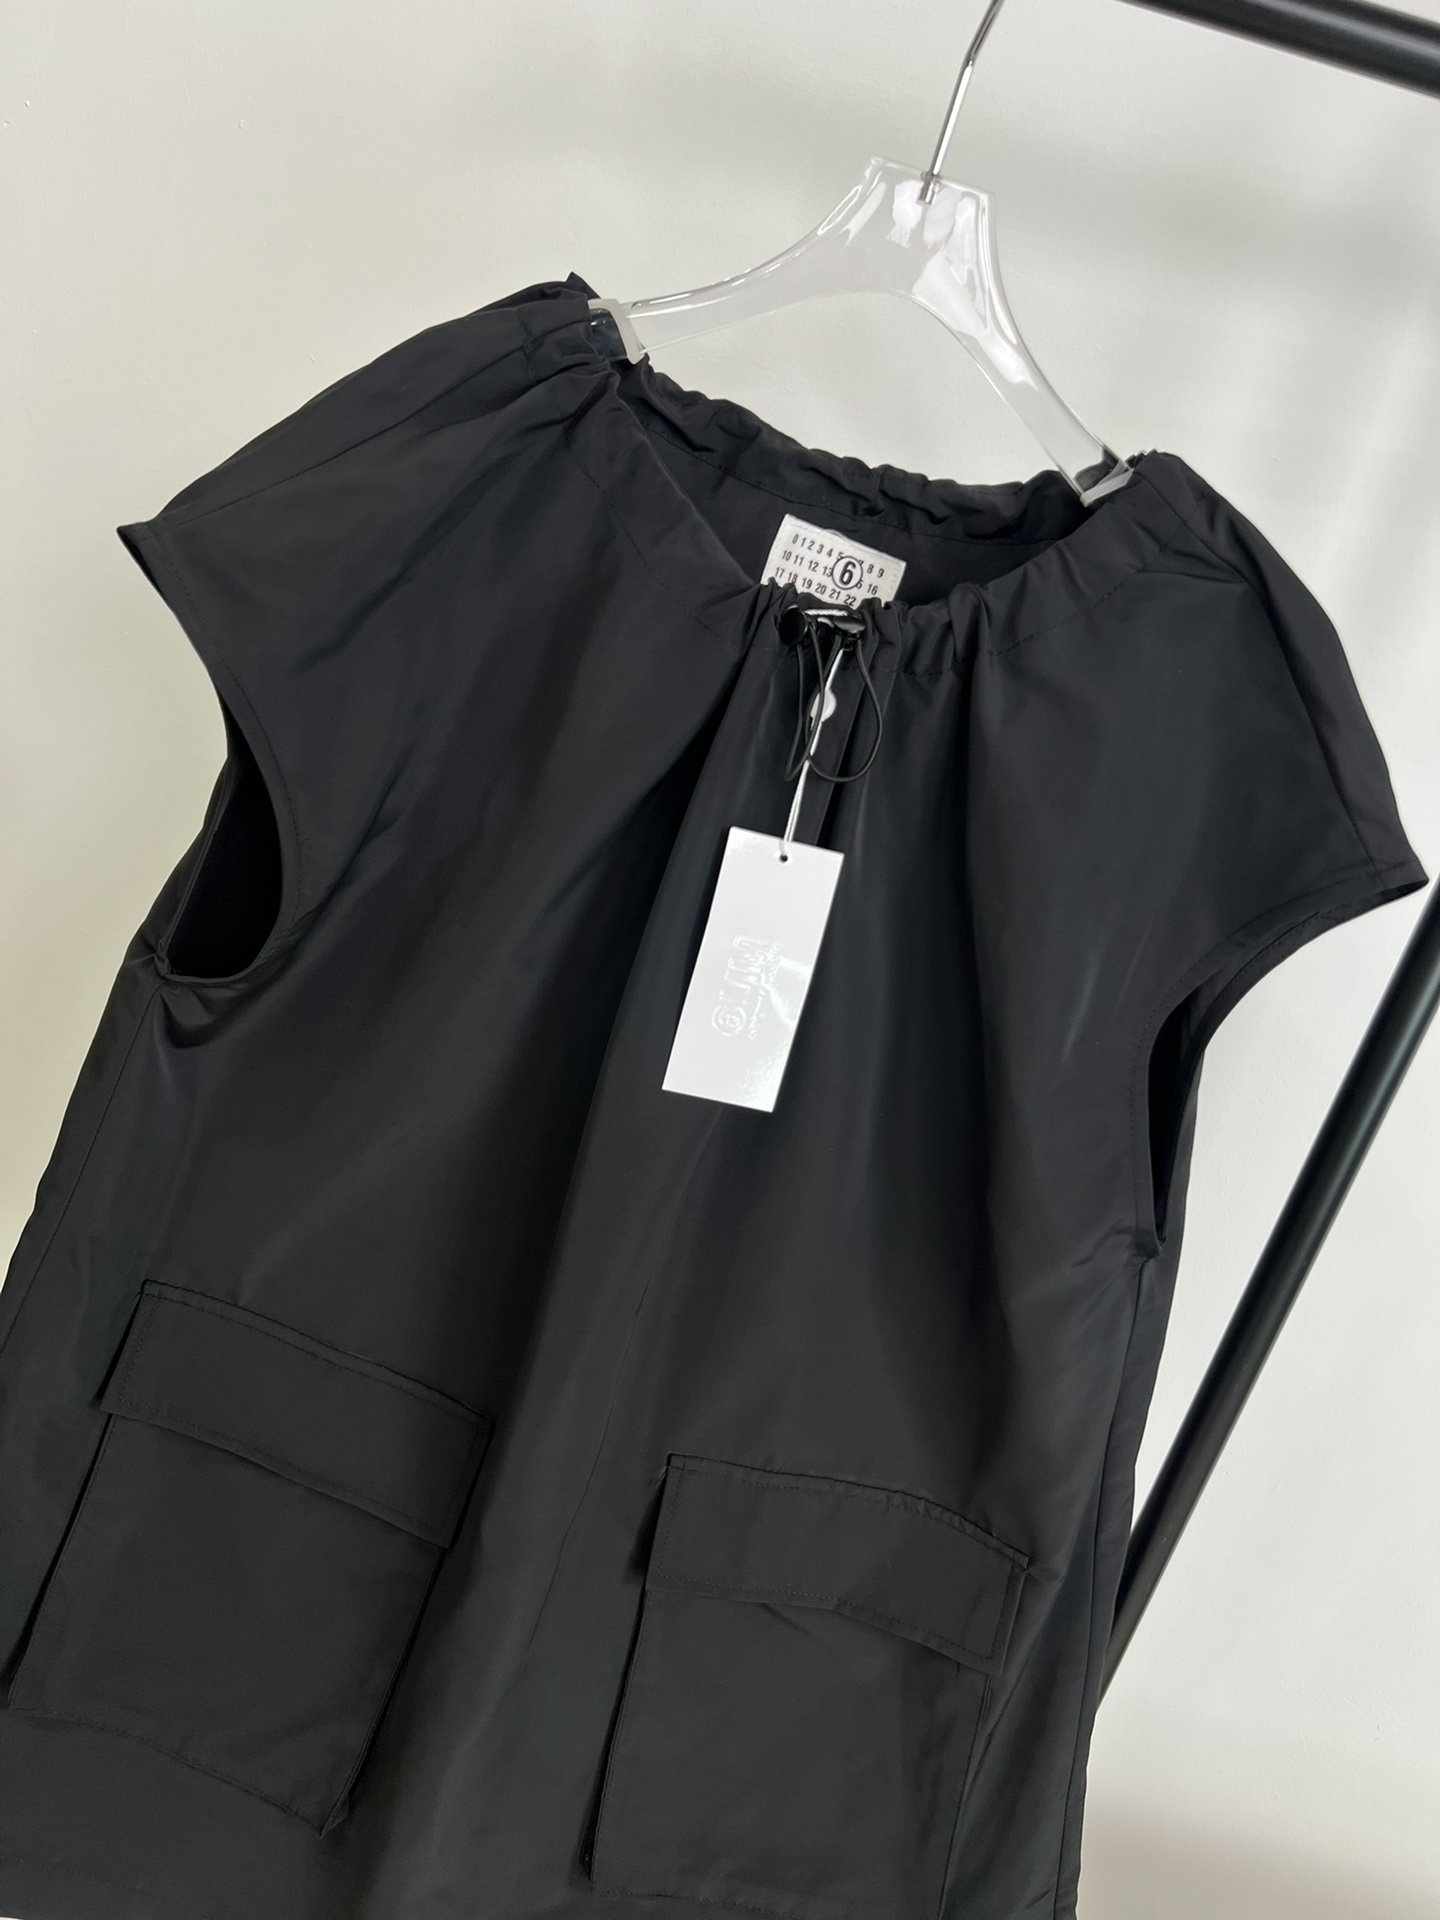 新款️！马吉拉24夏季新款！工装裙领口抽绳设计版型宽松！完全不挑身材经典黑咖两色超级洋气百搭！两色三码！